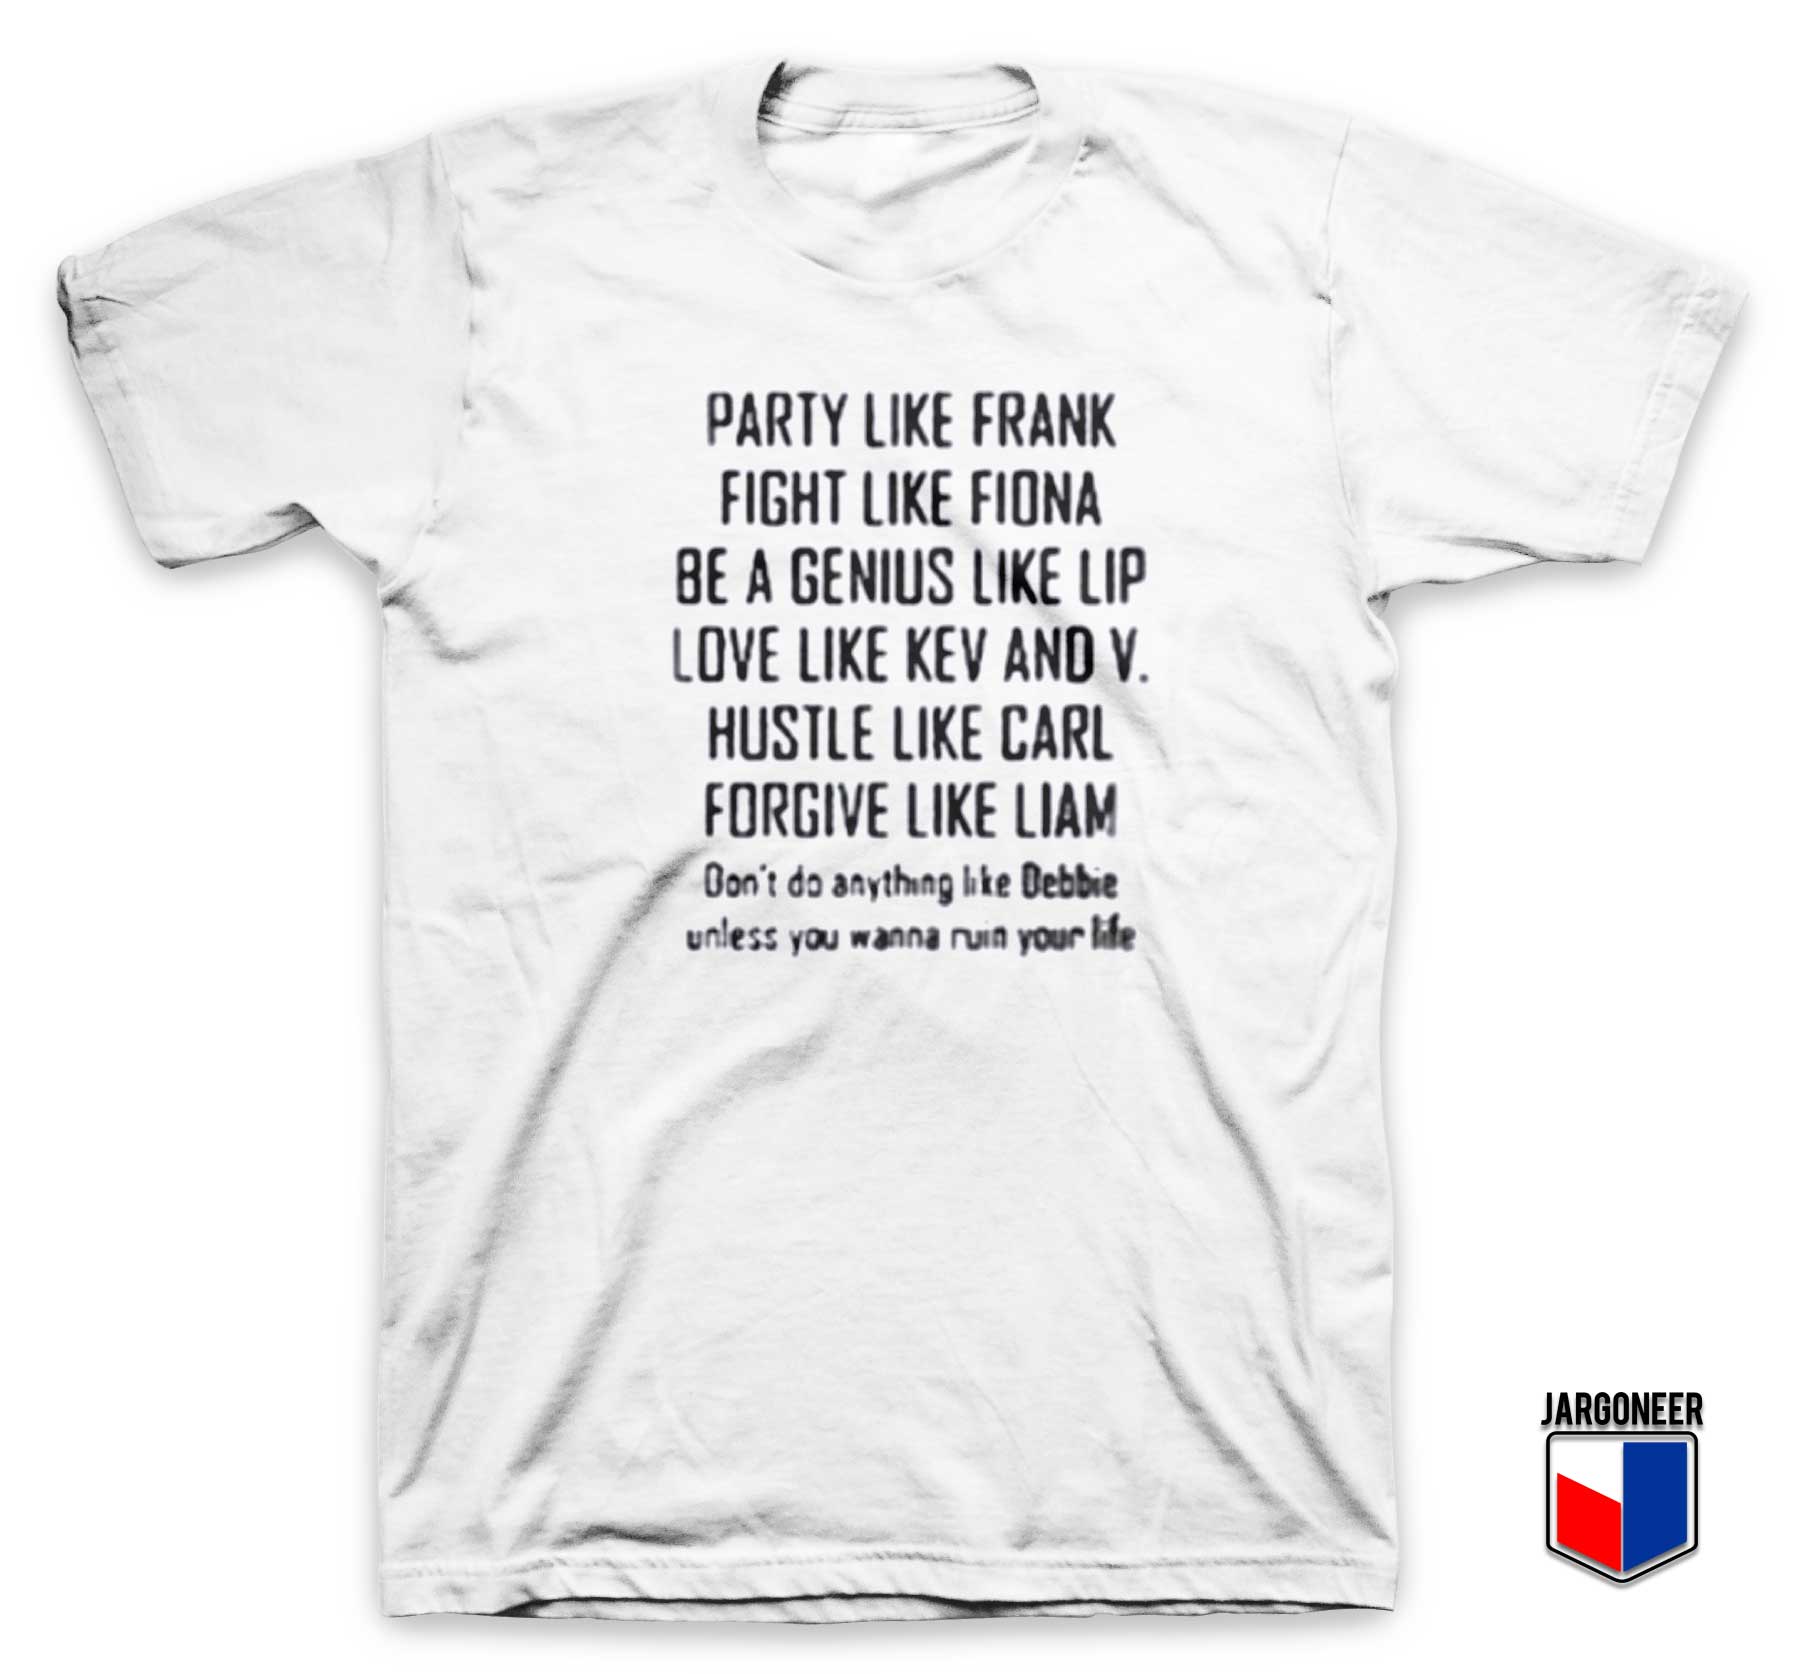 Party Like Frank T Shirt - Shop Unique Graphic Cool Shirt Designs